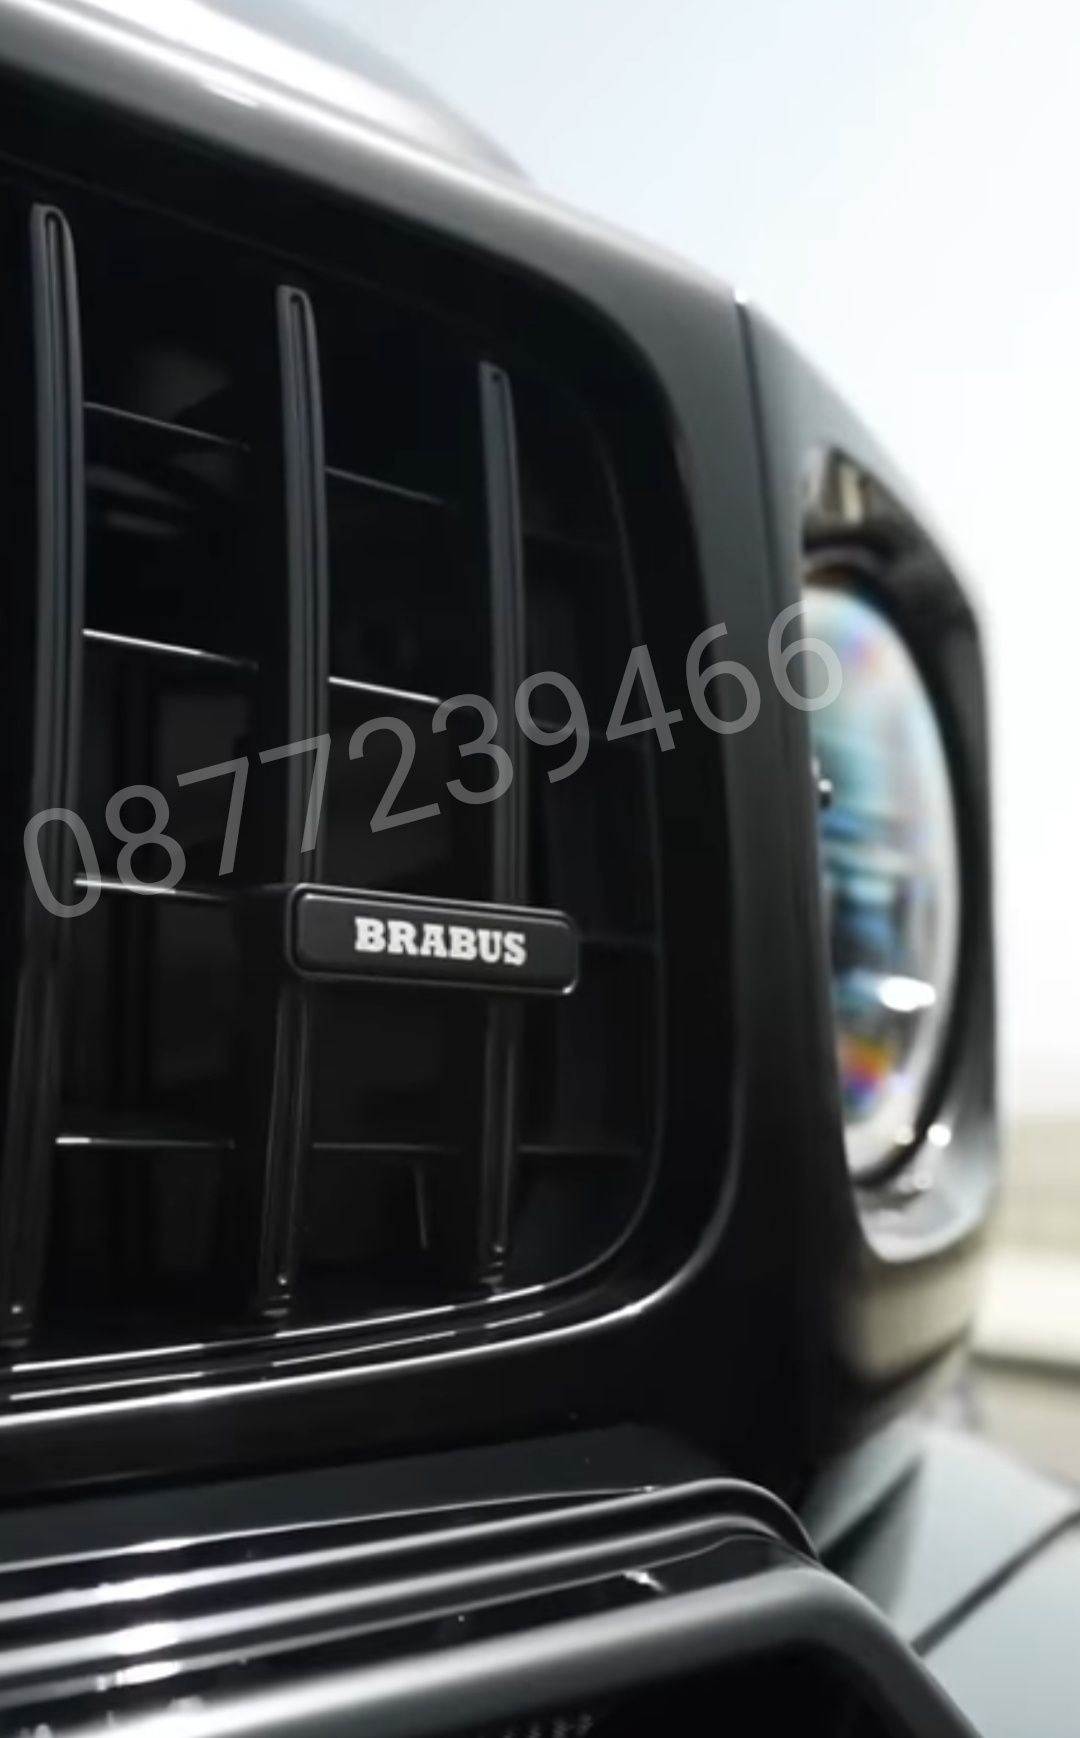 Mercedes Brabus AMG w222 w213 w464 w463 w257 w205 w218 w212 w290 w223